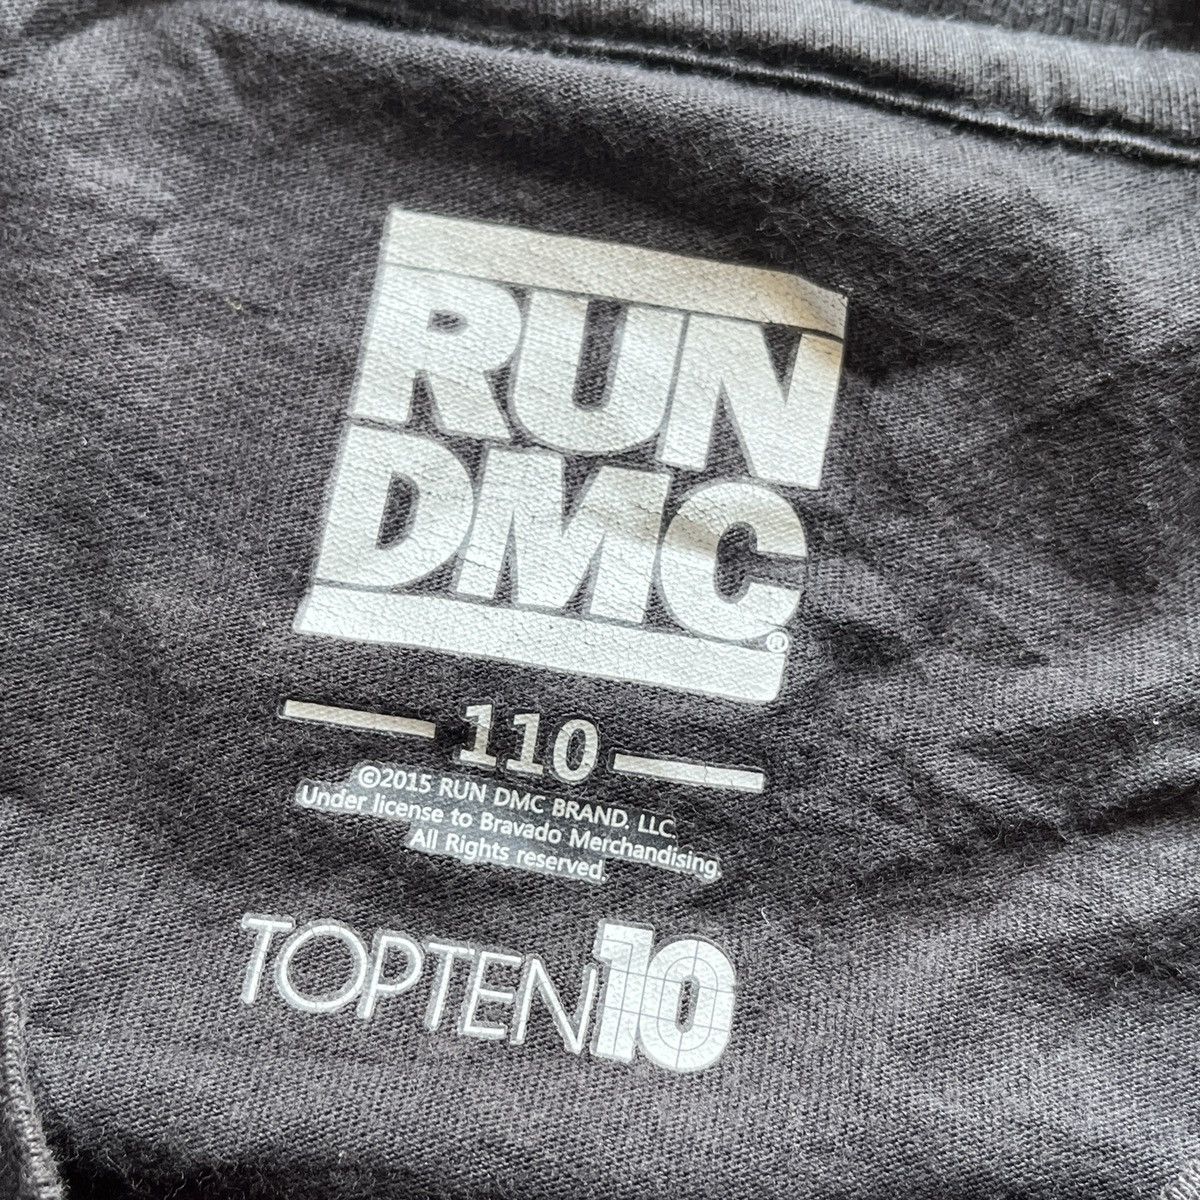 RUN DMC Raising Hell Rap Tees Black Copyright 2015 - 6